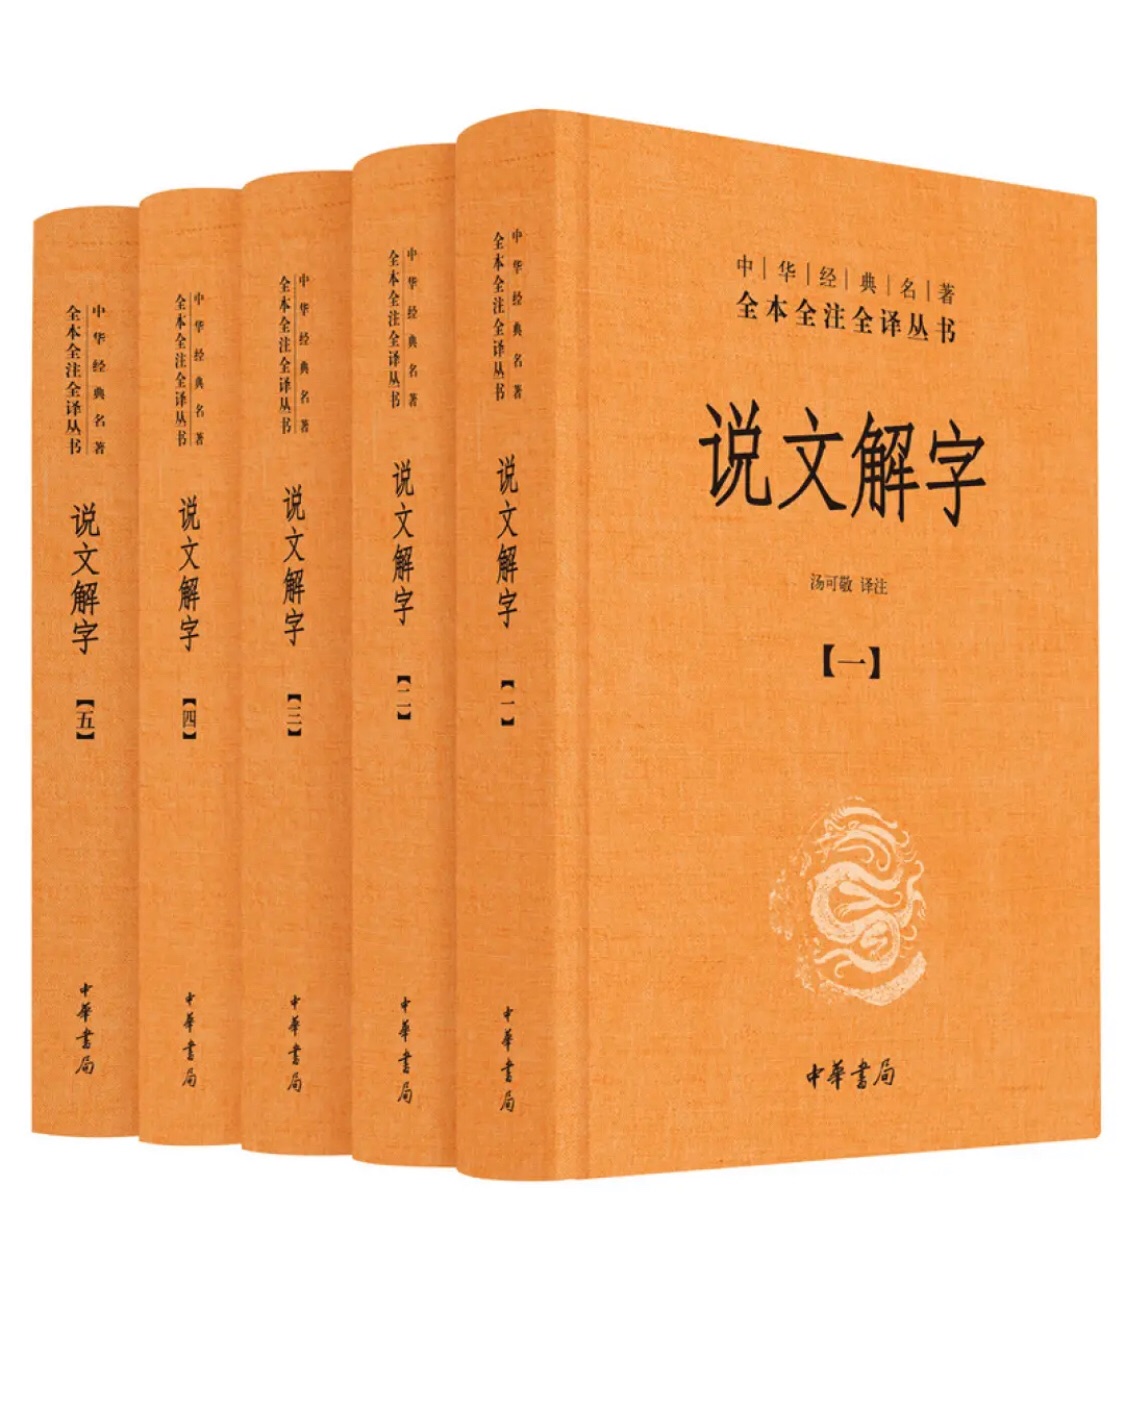 中华书局的说文解字是最权威的一版。中华书局的说文解字是最权威的一版。中华书局的说文解字是最权威的一版。中华书局的说文解字是最权威的一版。